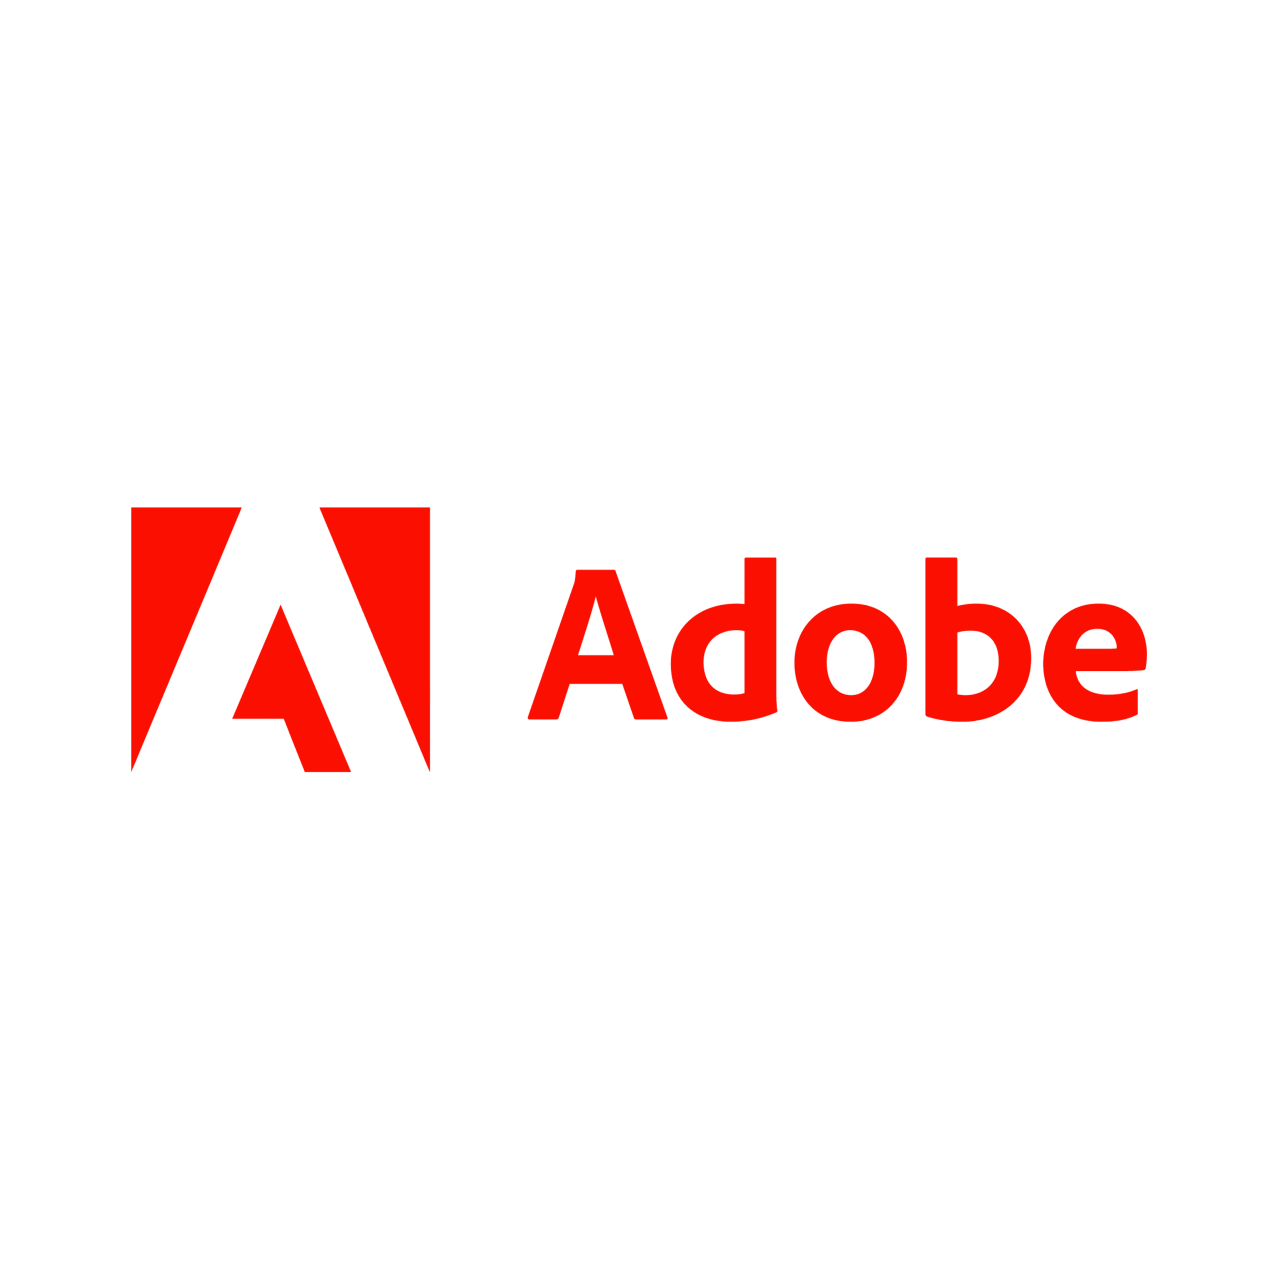 V Adobe